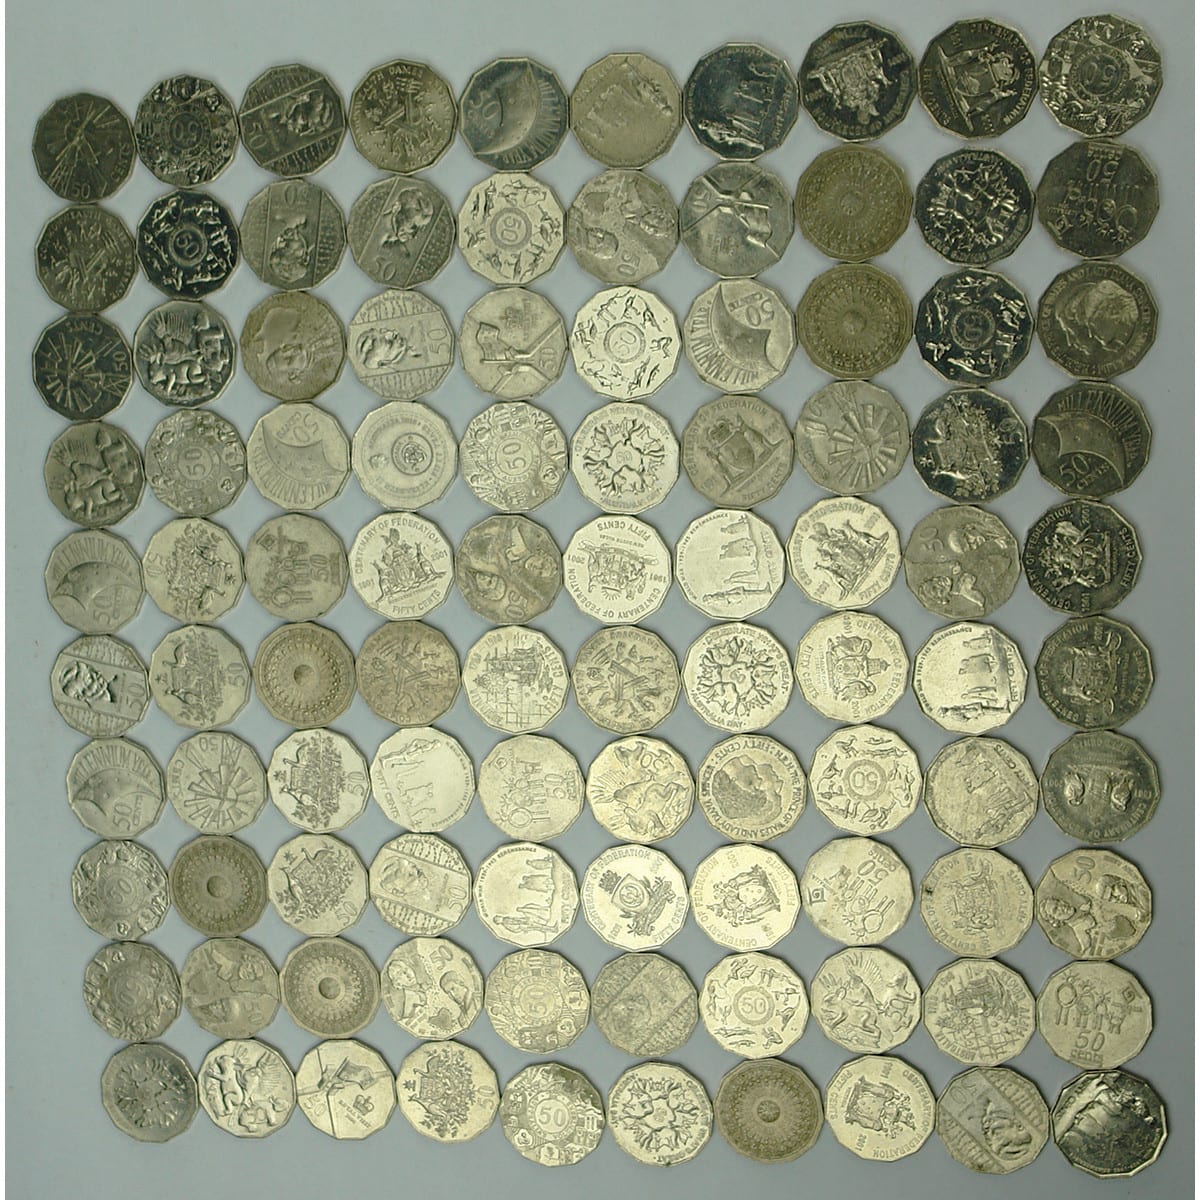 Coins. 100 x commemorative Australian 50 cent coins.